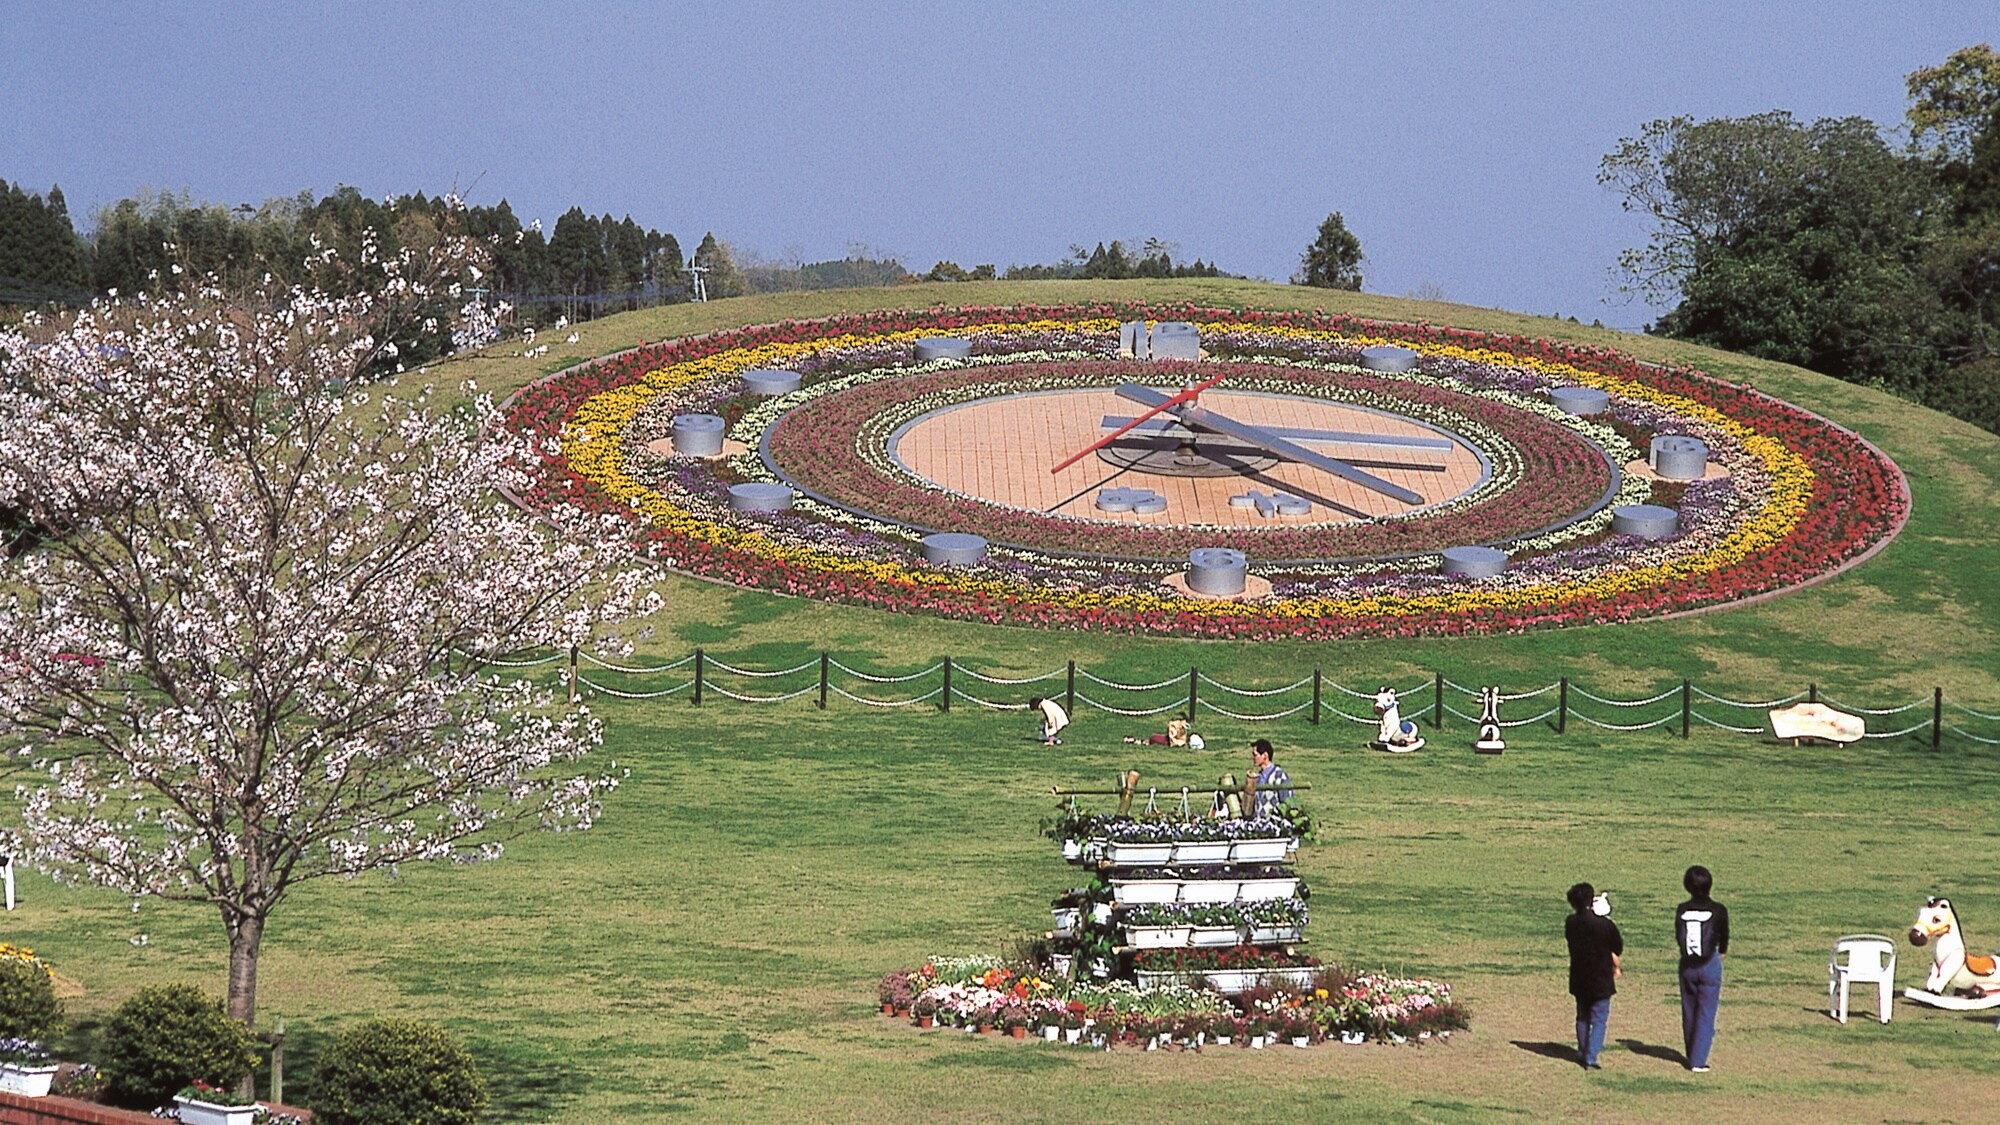 [นาฬิกาดอกไม้ Bajikoen] เส้นผ่านศูนย์กลาง 28 เมตร! เป็นนาฬิกาดอกไม้ที่ใหญ่ที่สุดในญี่ปุ่นตะวันตก ดอกไม้สี่ฤดูมีสีสัน